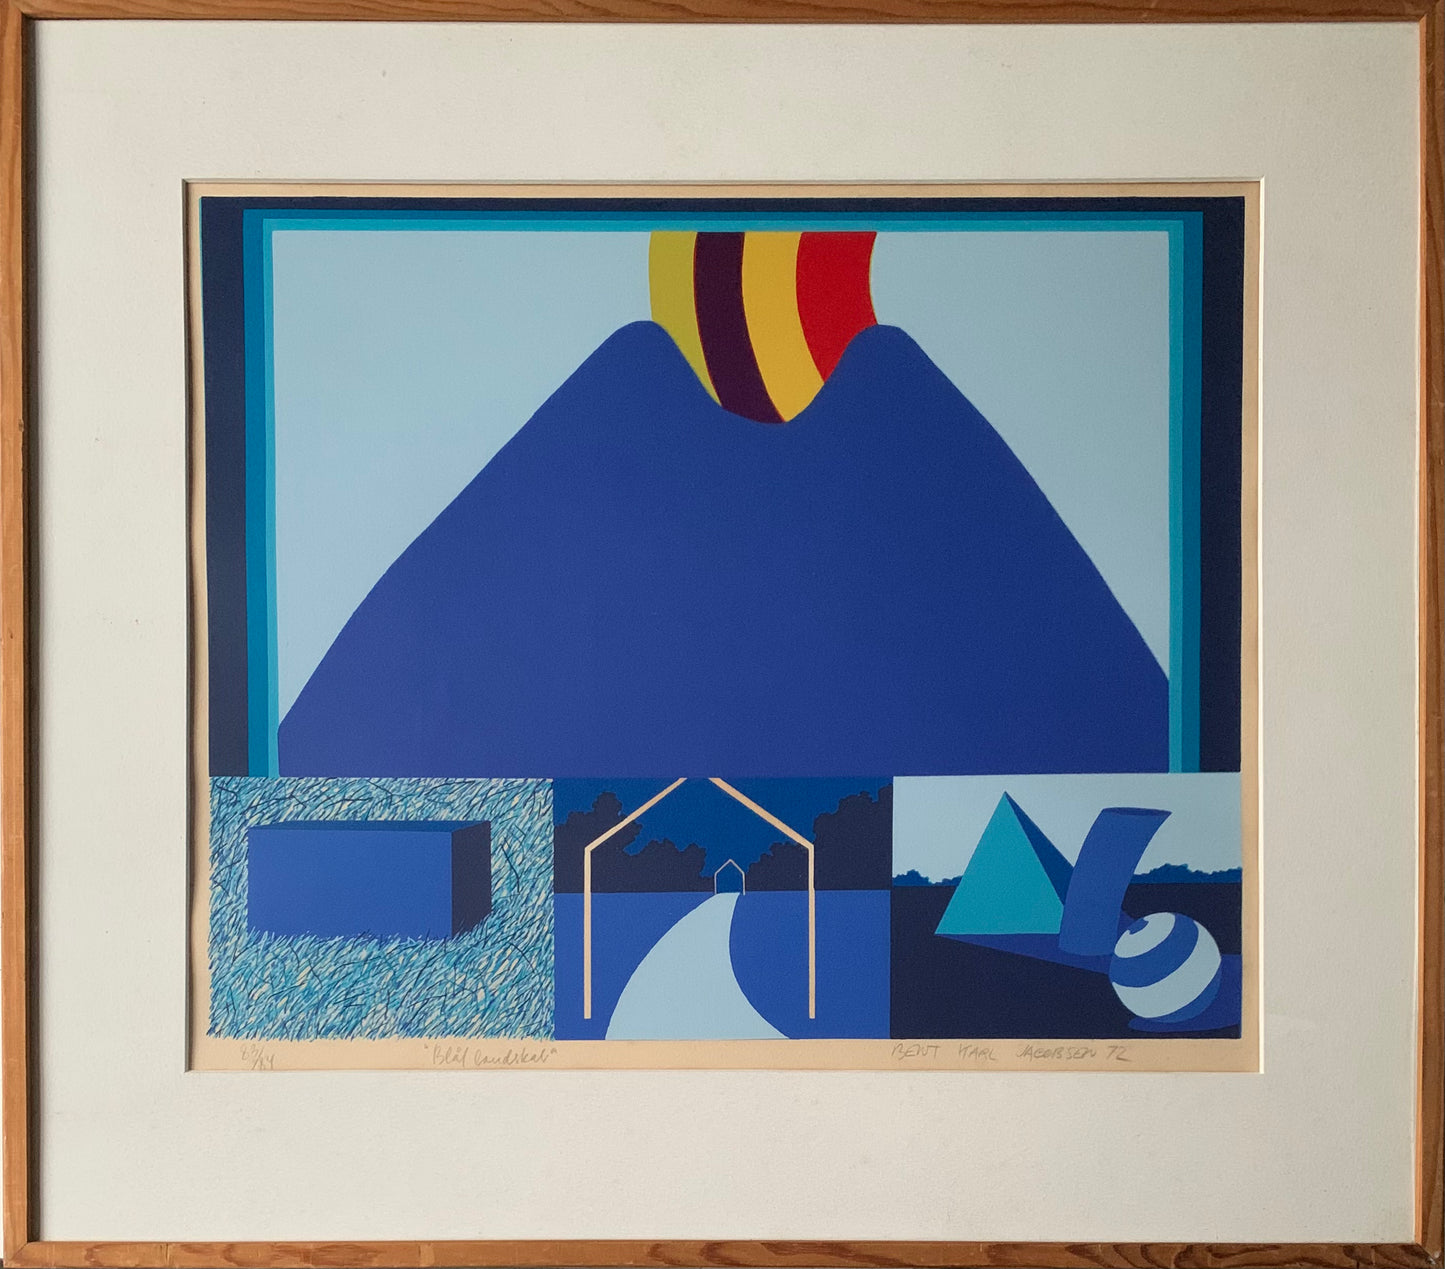 Bent Karl Jacobsen. “Blue landscape”, 1972